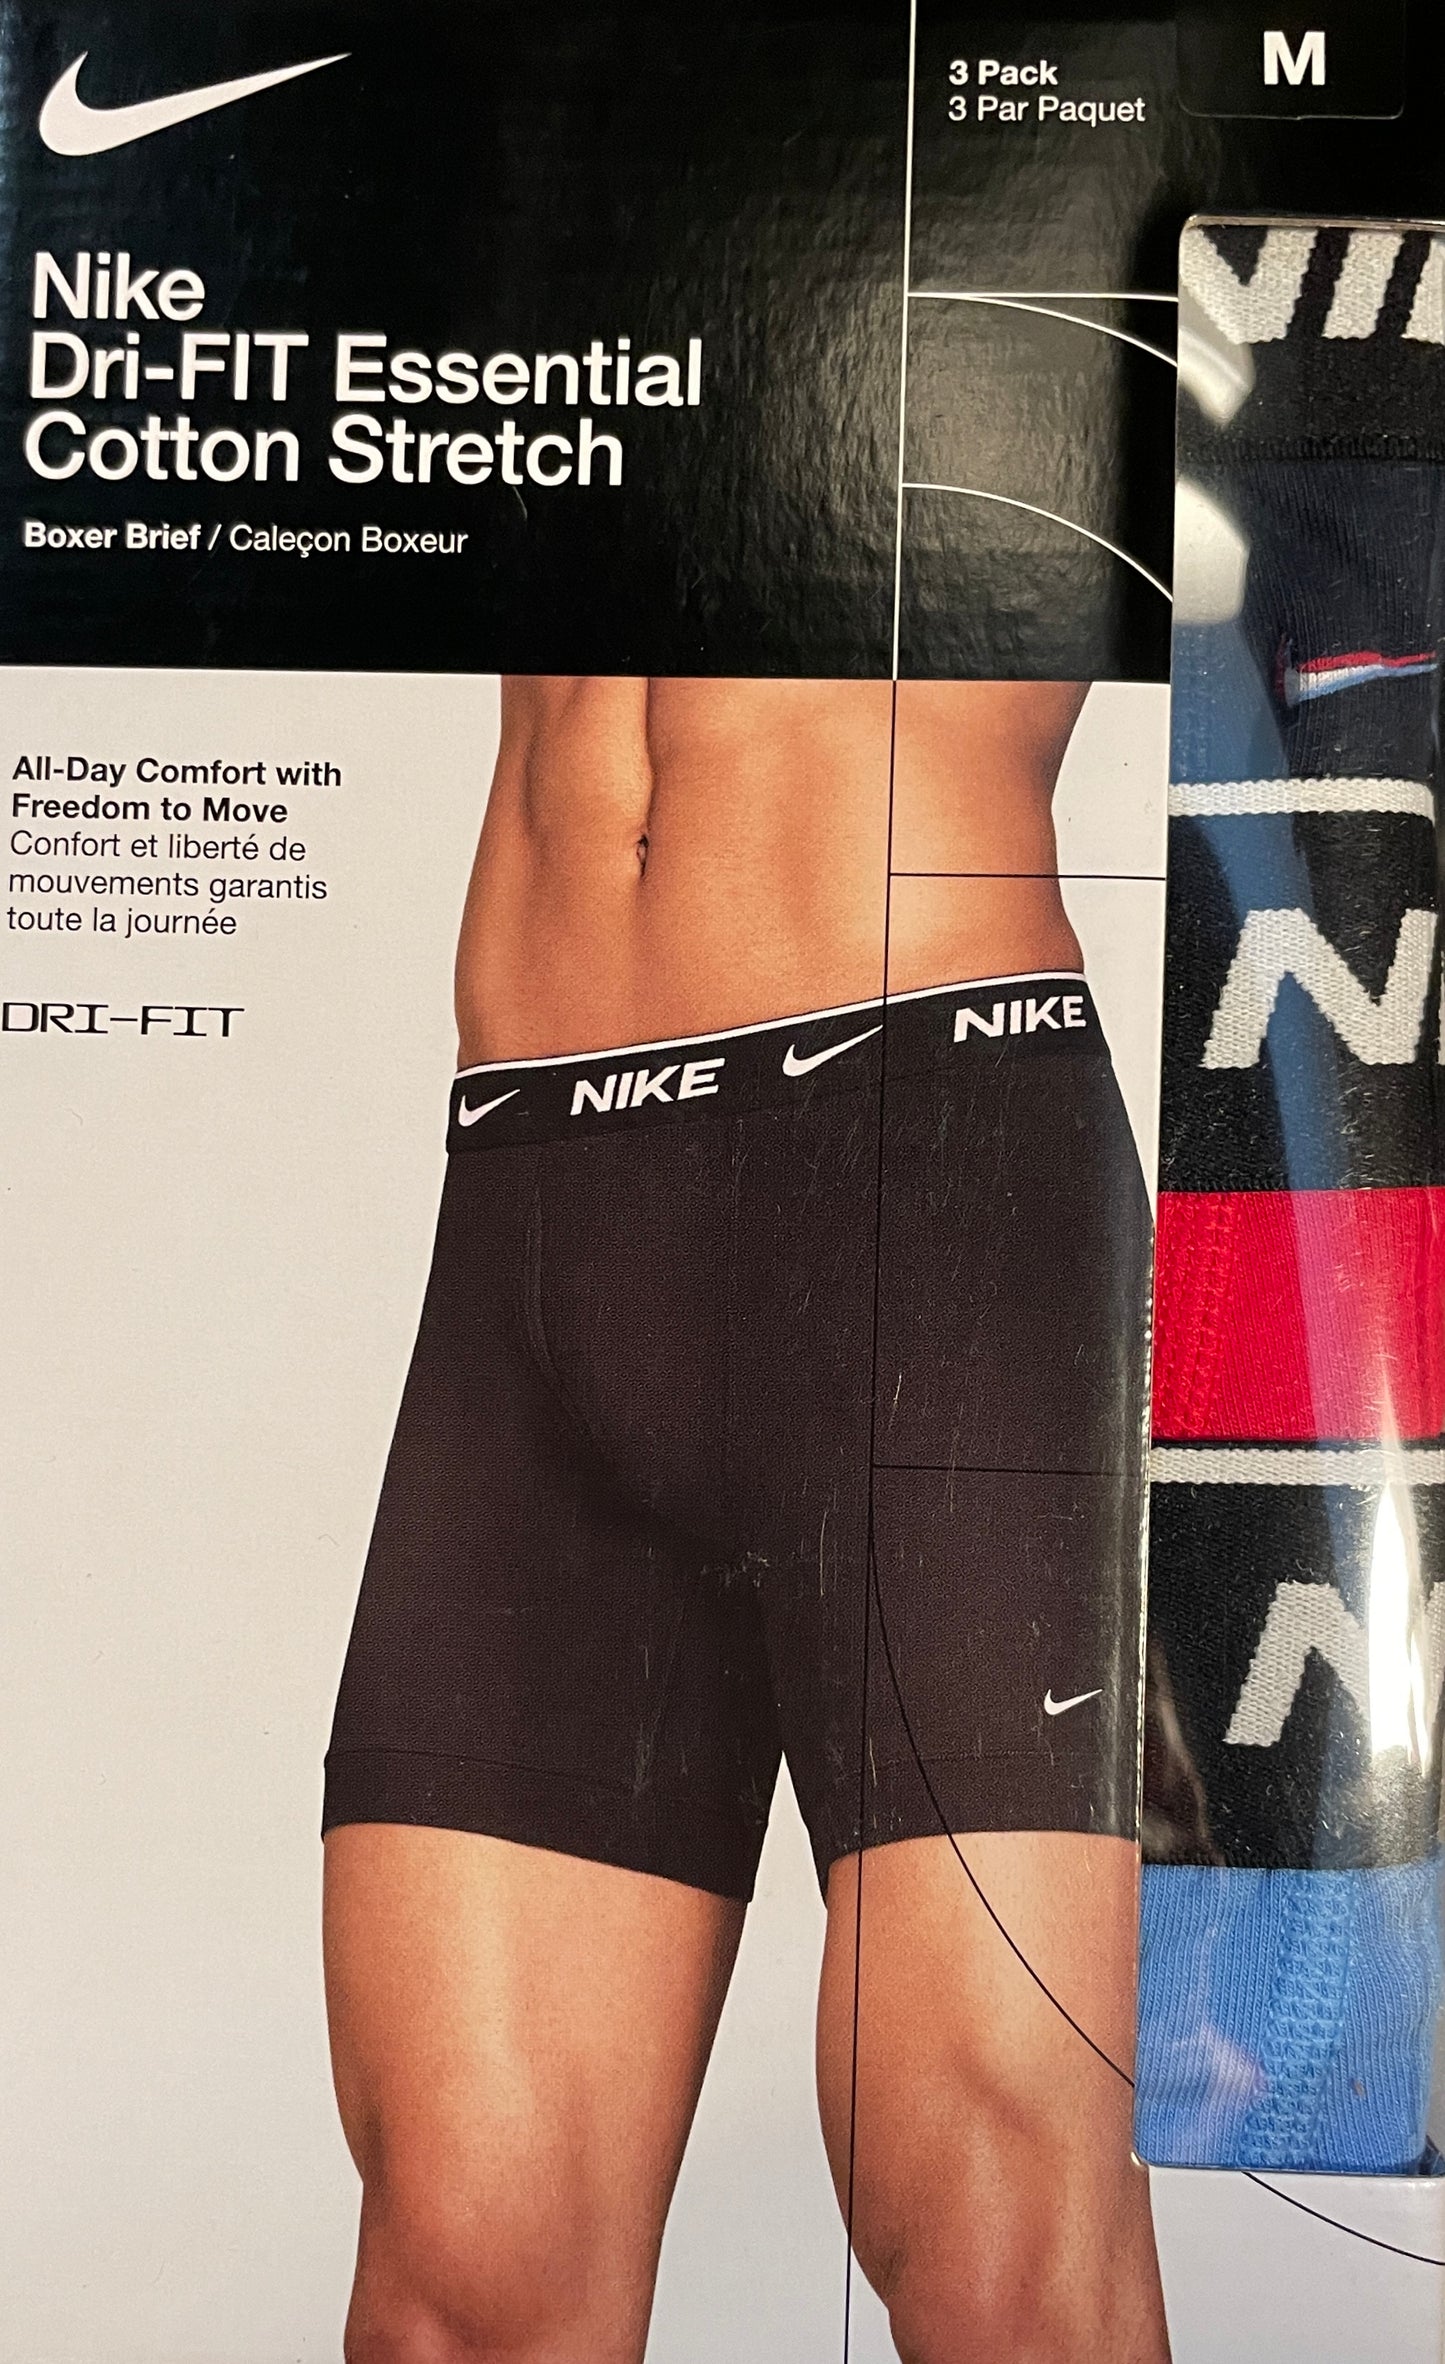 Nike Dri-Fit Essential Cotton Stretch Boxer Brief Black/Red/Blue 3-Pack